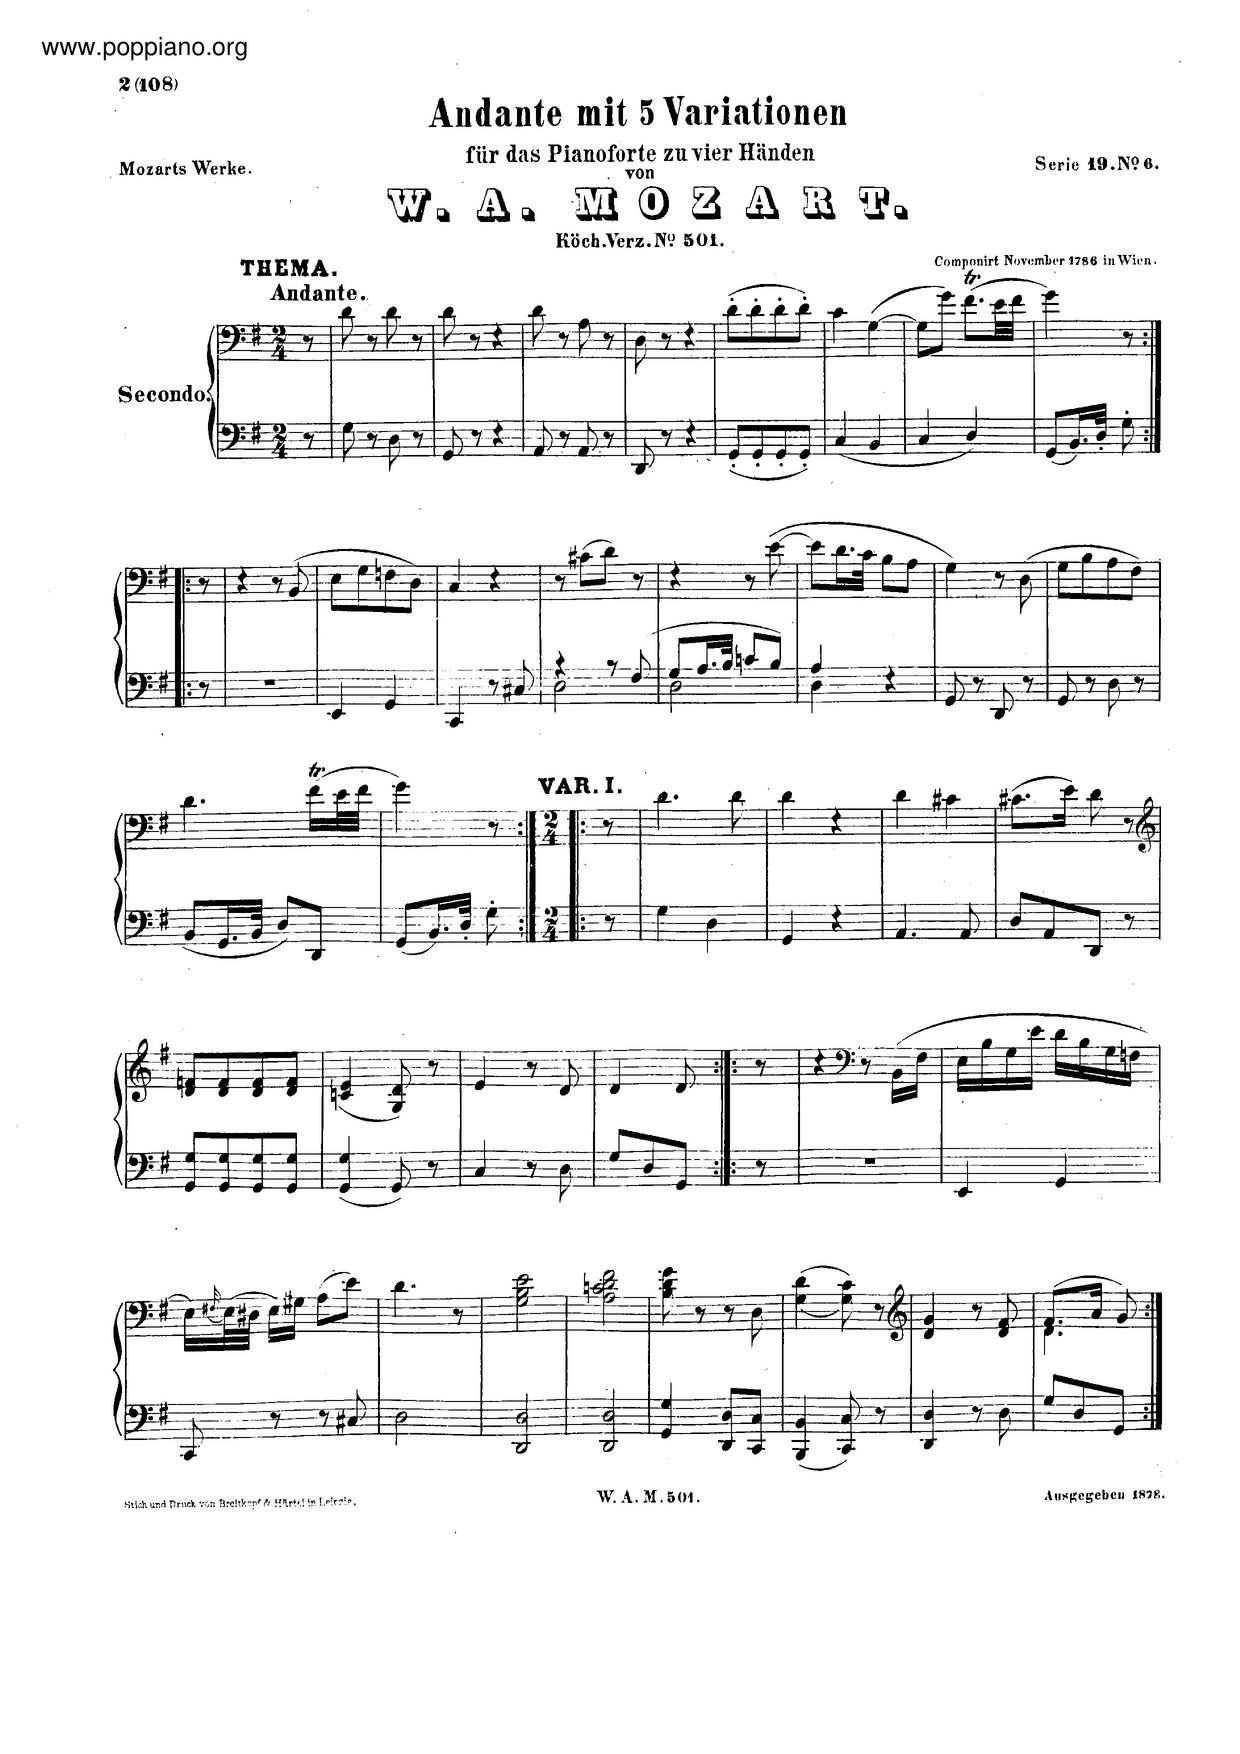 5 Variations In G Major, K. 501琴谱